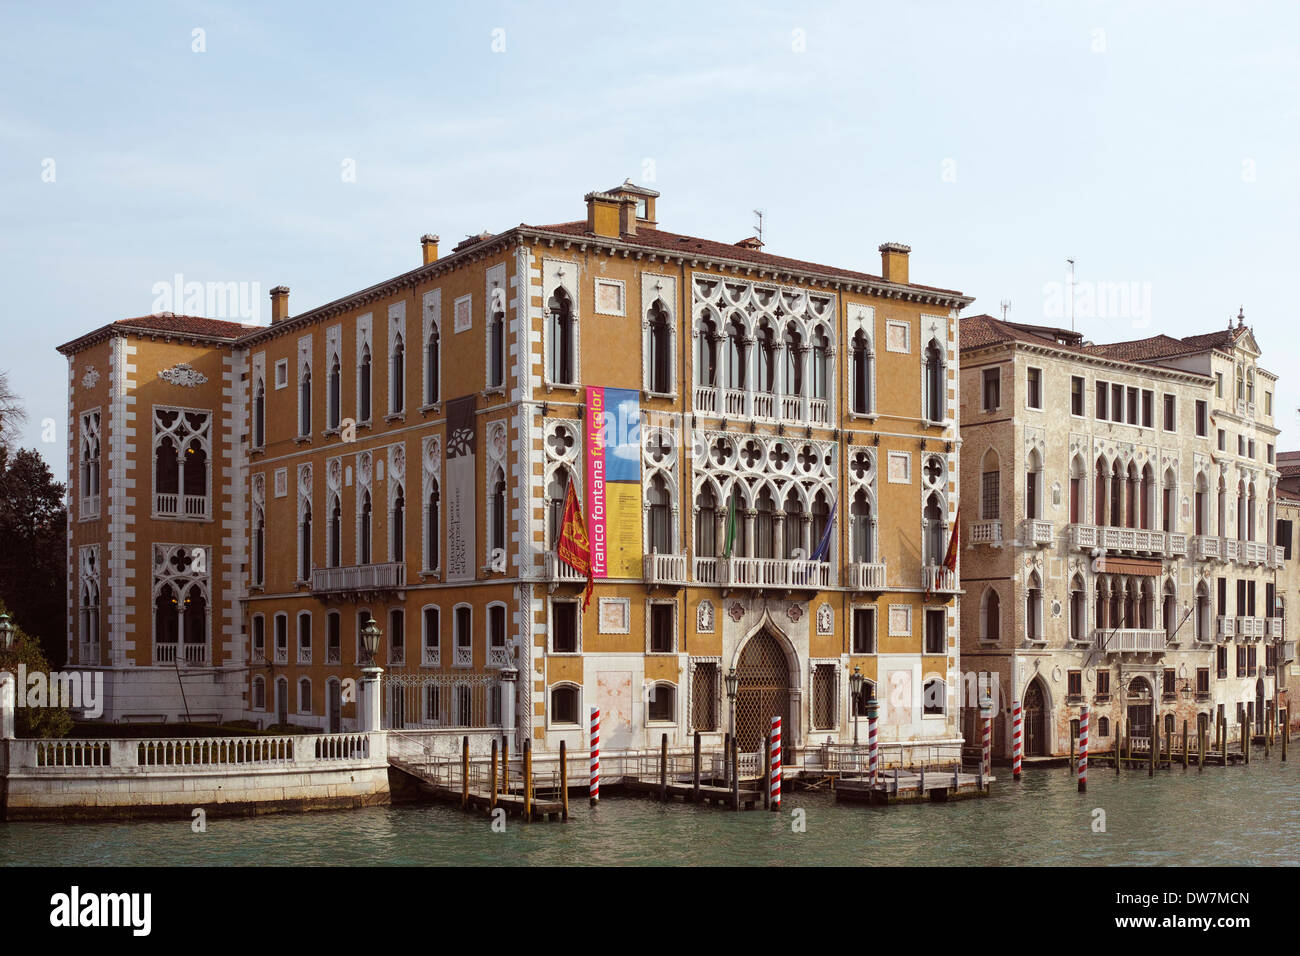 Vista del Palazzo Cavalli-Franchetti (facciata gialla - Palazzo Barbaro alla sua destra), il Grand Canal, Venezia, Italia Foto Stock